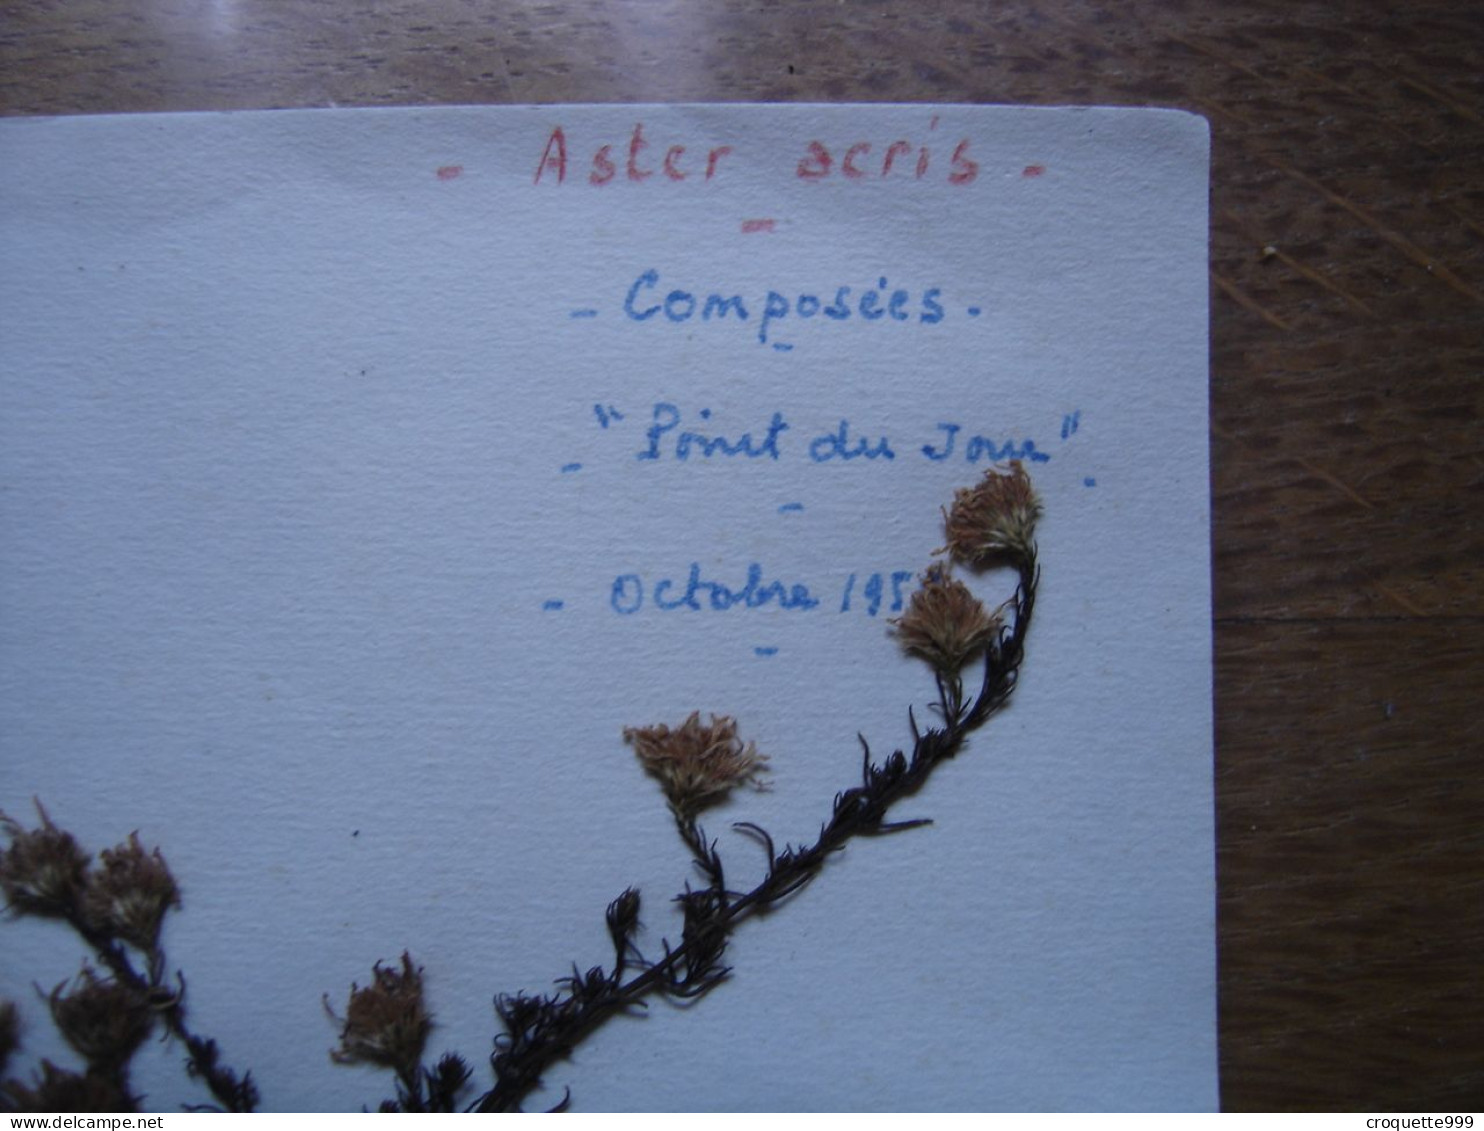 Annees 50 PLANCHE D'HERBIER Du Gard Herbarium Planche Naturelle 8 - Pop Art